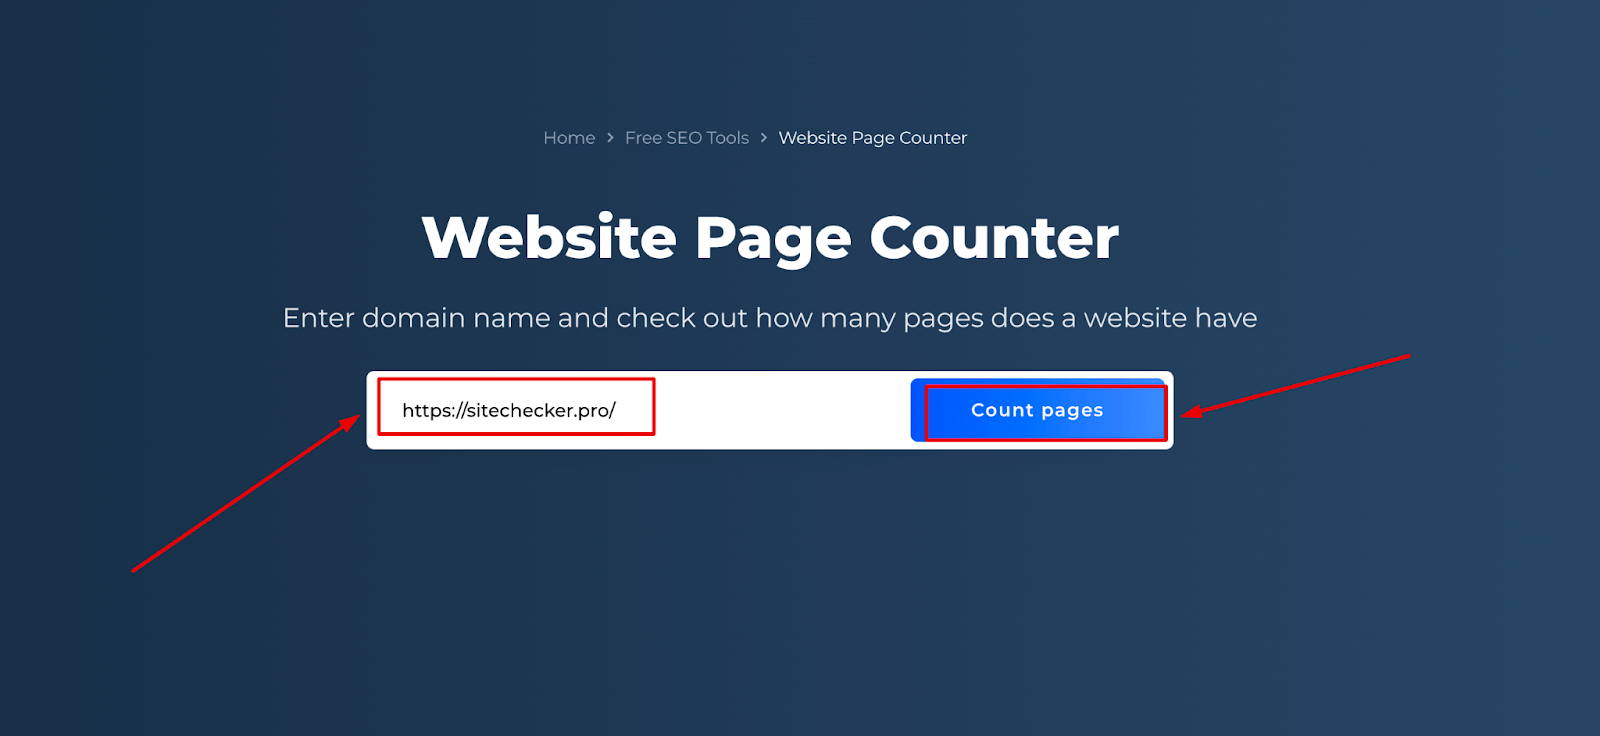 Räknare för webbplatsens sidor